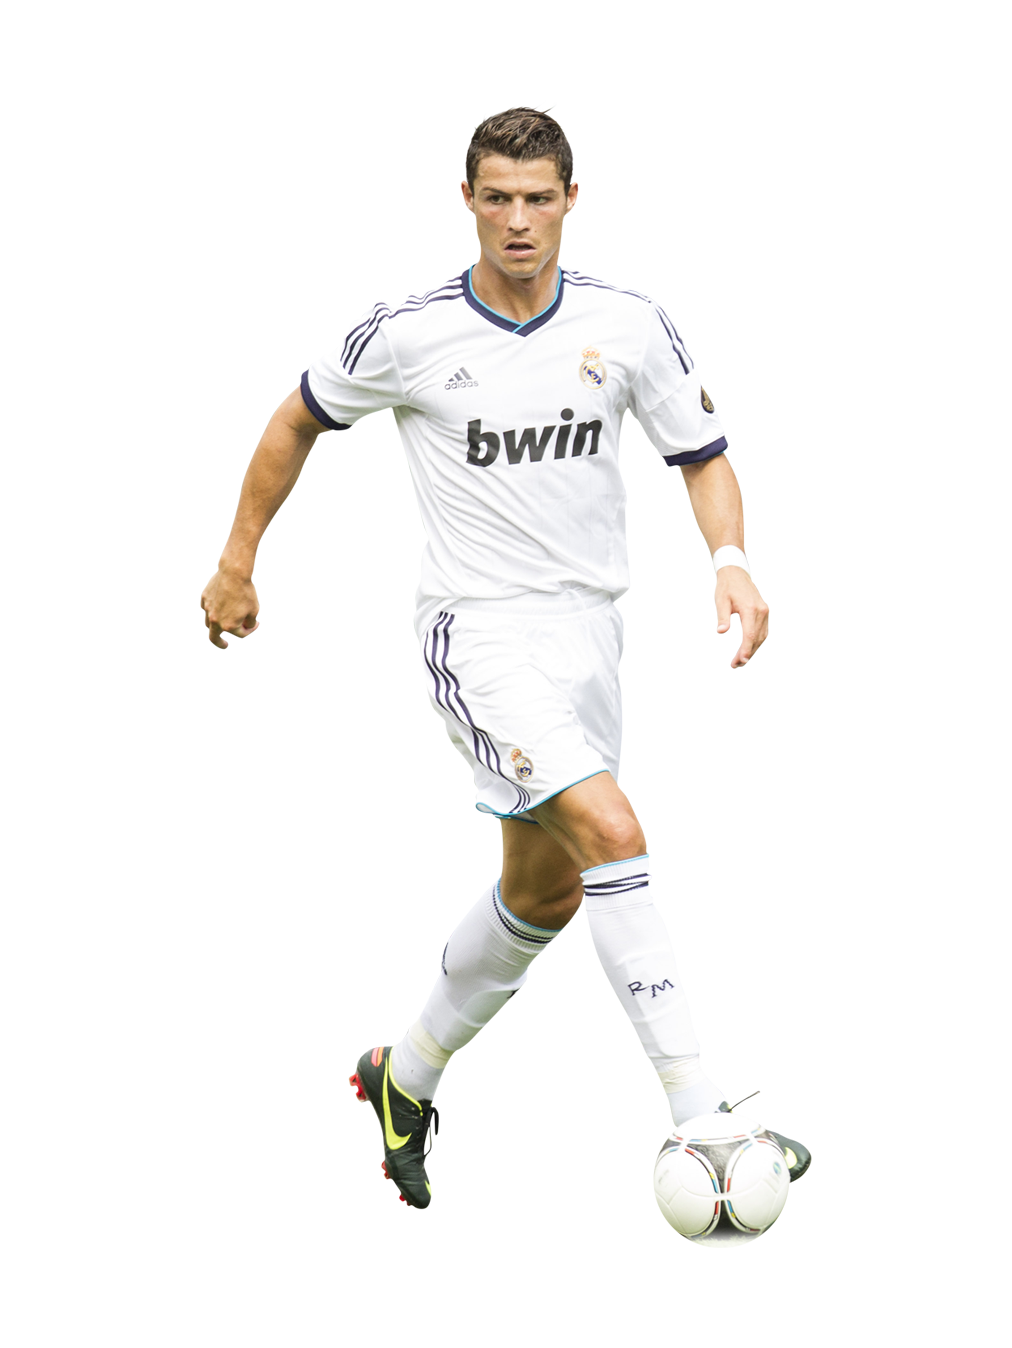 Designer de Boleiro: Cristiano Ronaldo - Portugal/Real Madrid/Manchester United